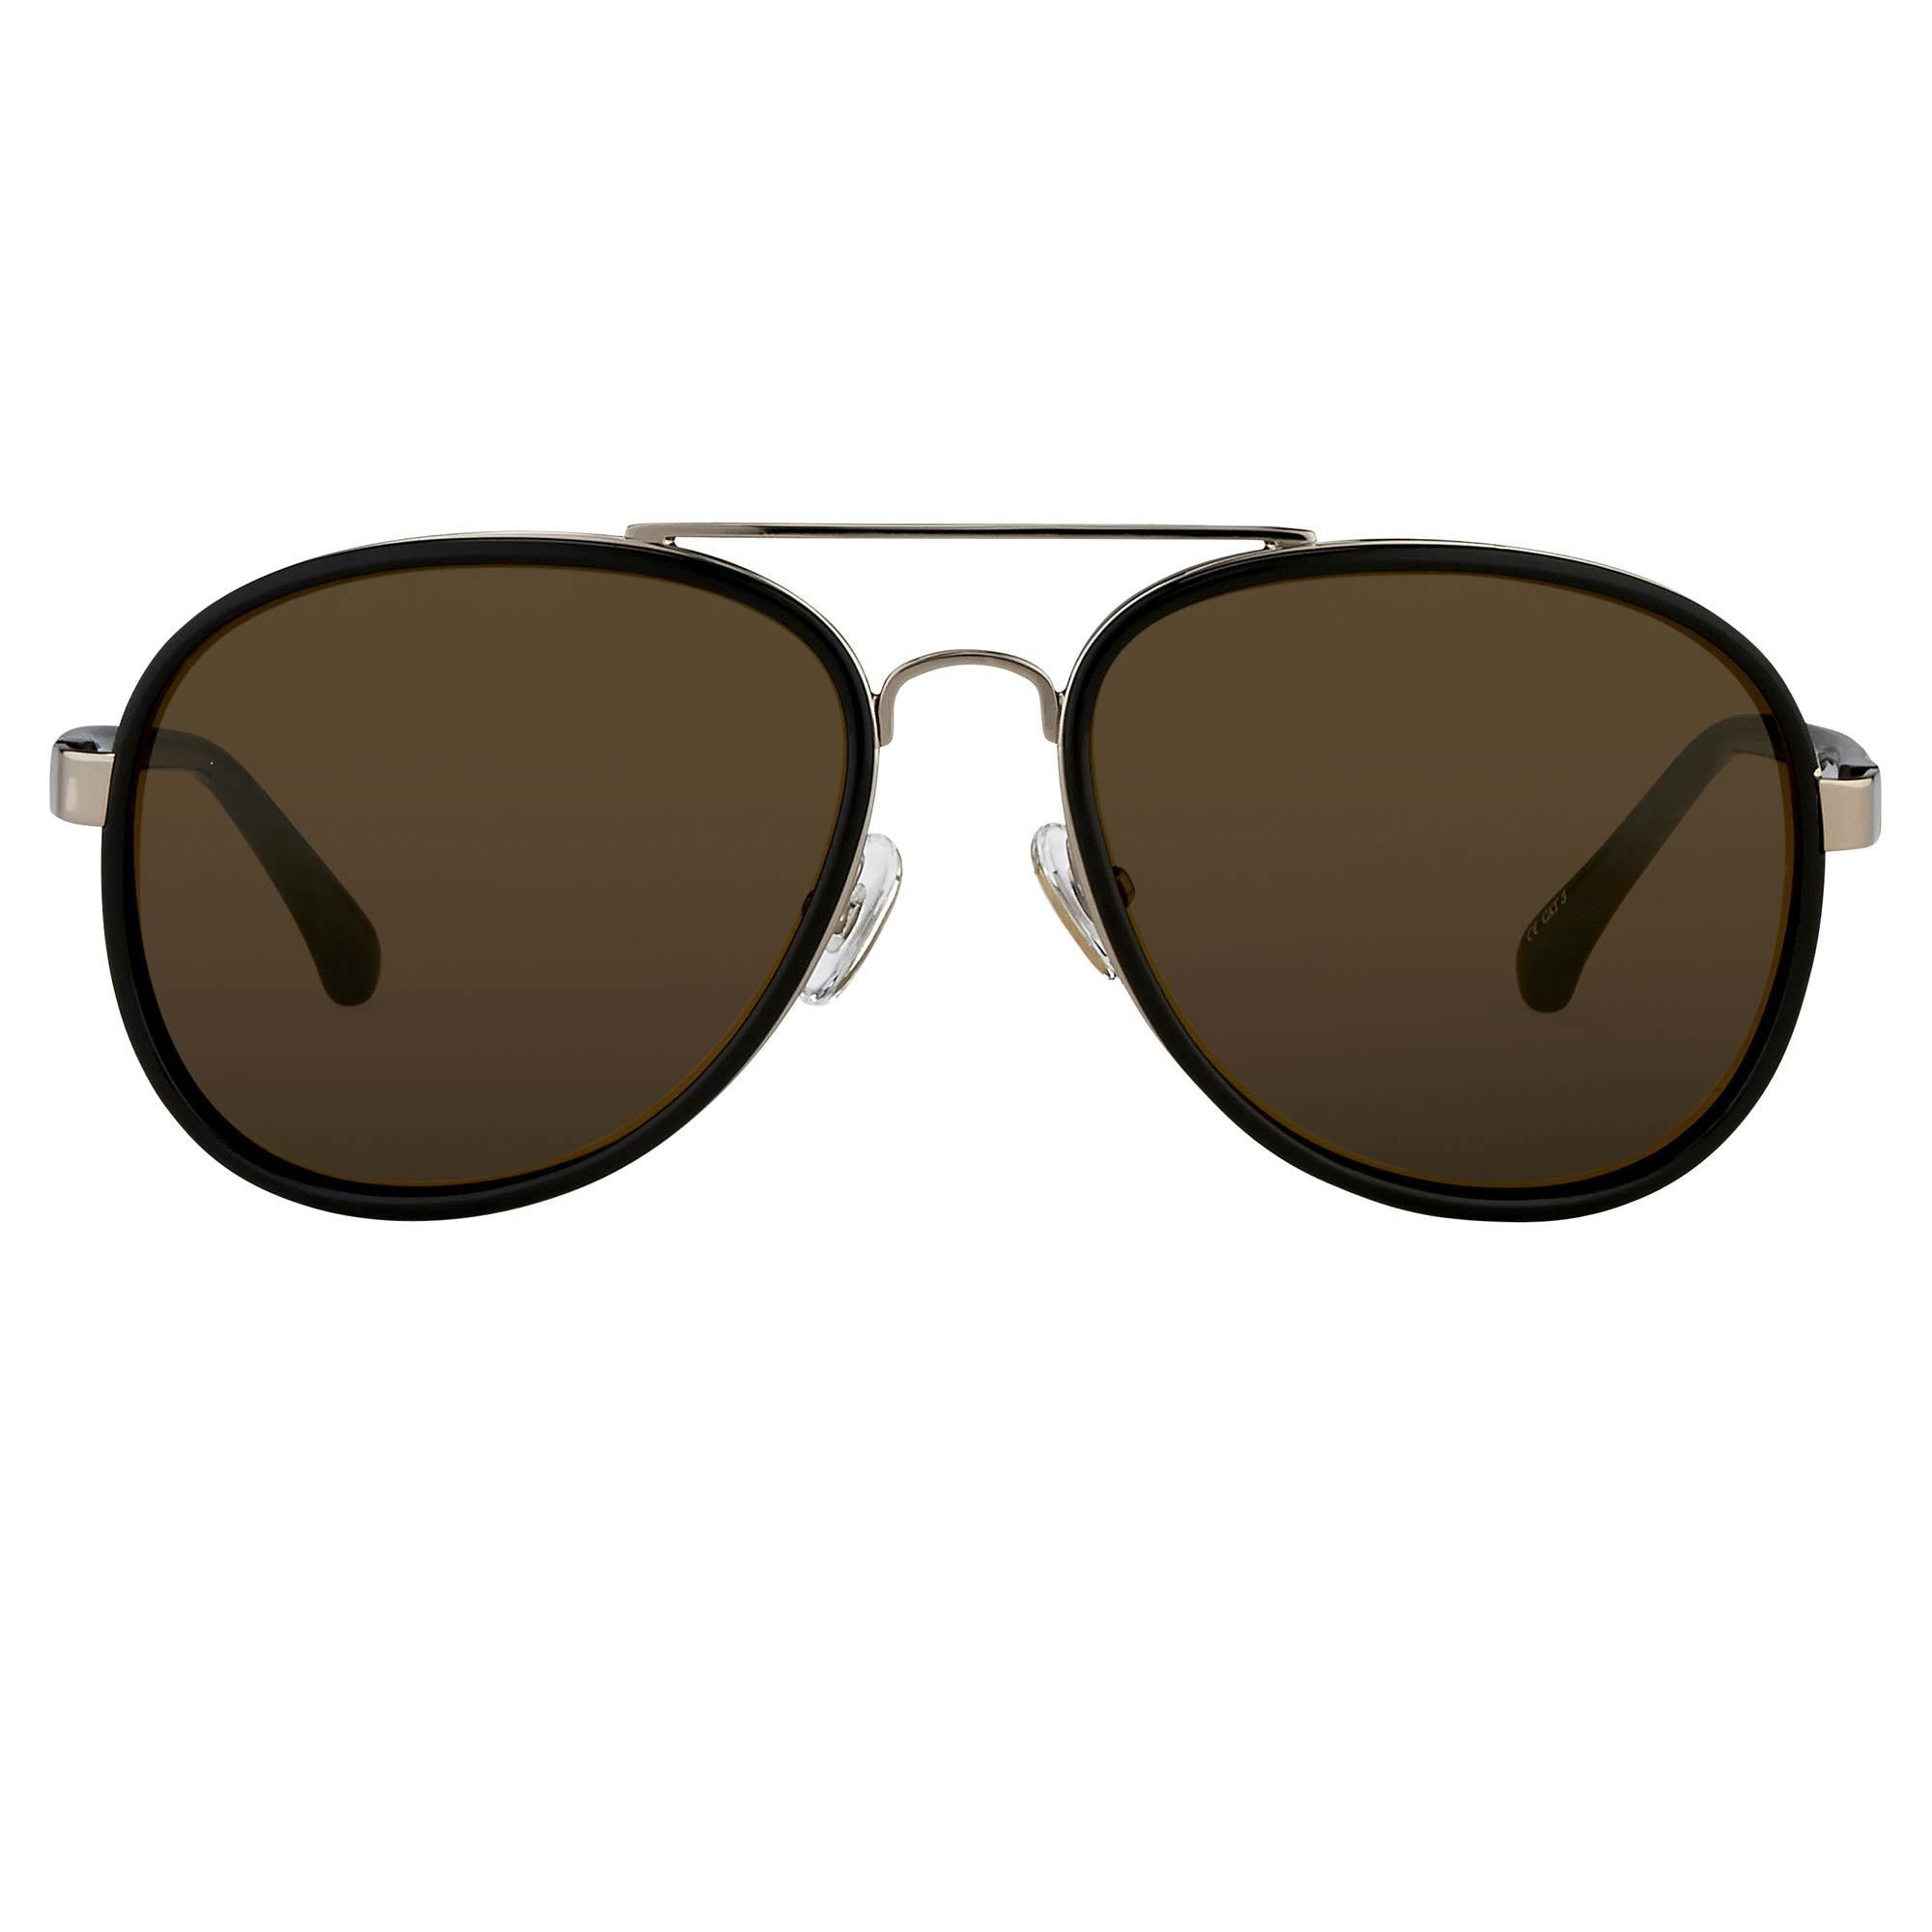 Color_DVN97C6SUN - Dries van Noten 97 C6 Aviator Sunglasses